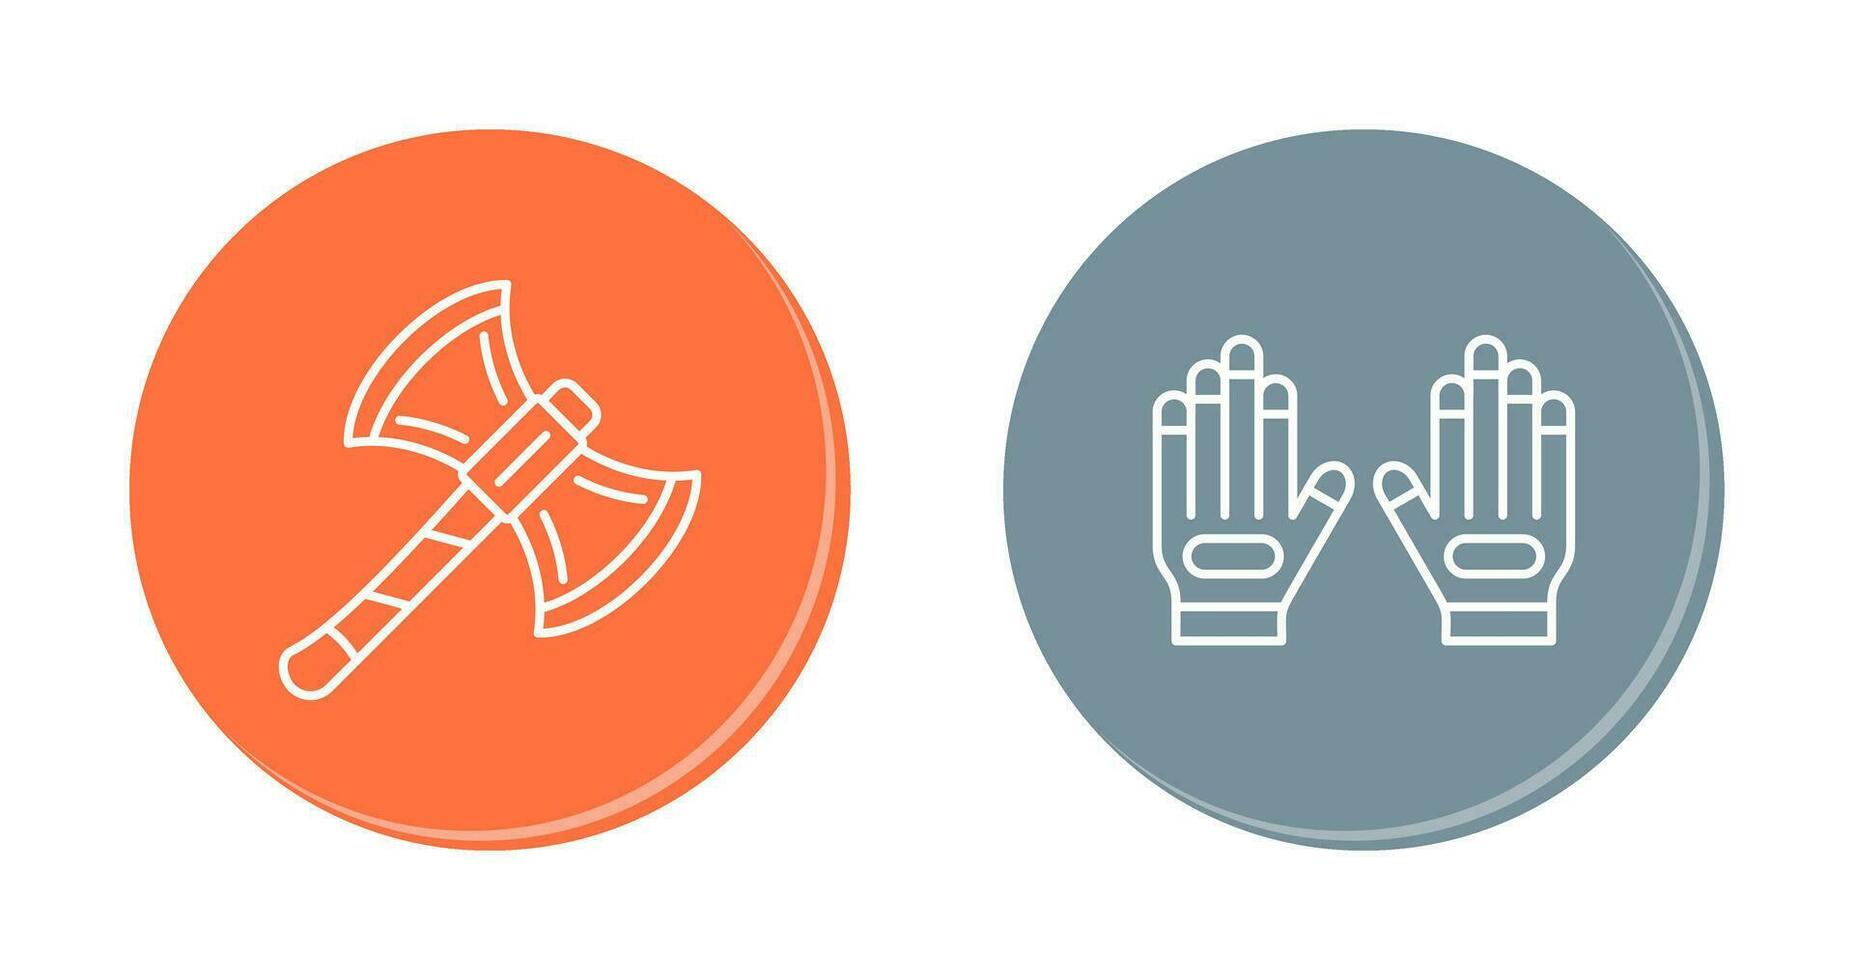 Axt und Handschuh Symbol vektor